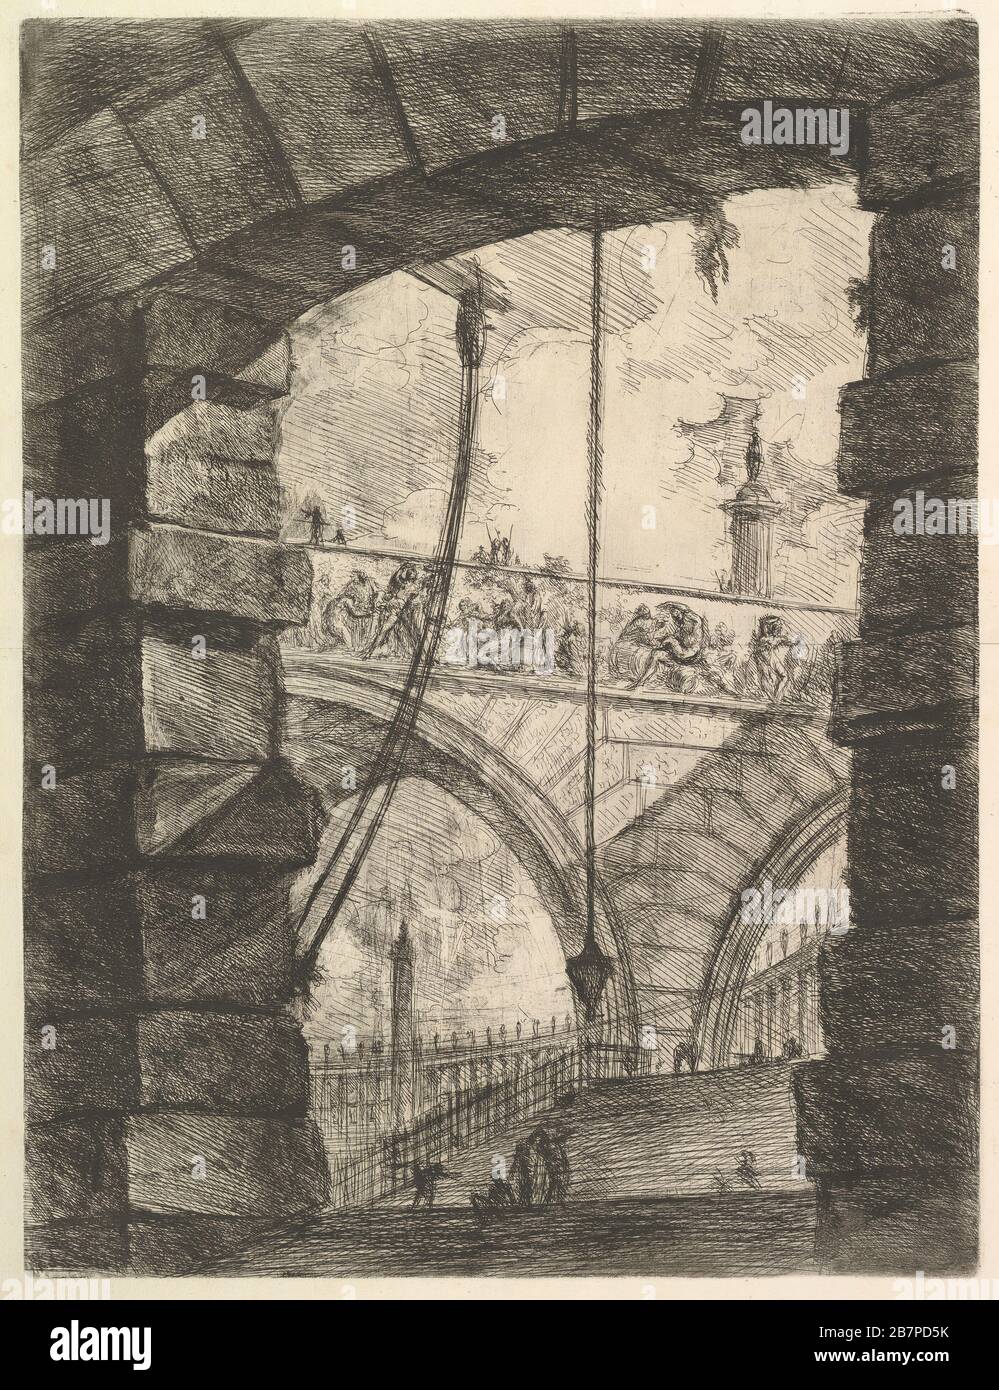 The Grand Piazza, from Carceri d'invenzione (Imaginary Prisons), ca. 1749-50. Stock Photo